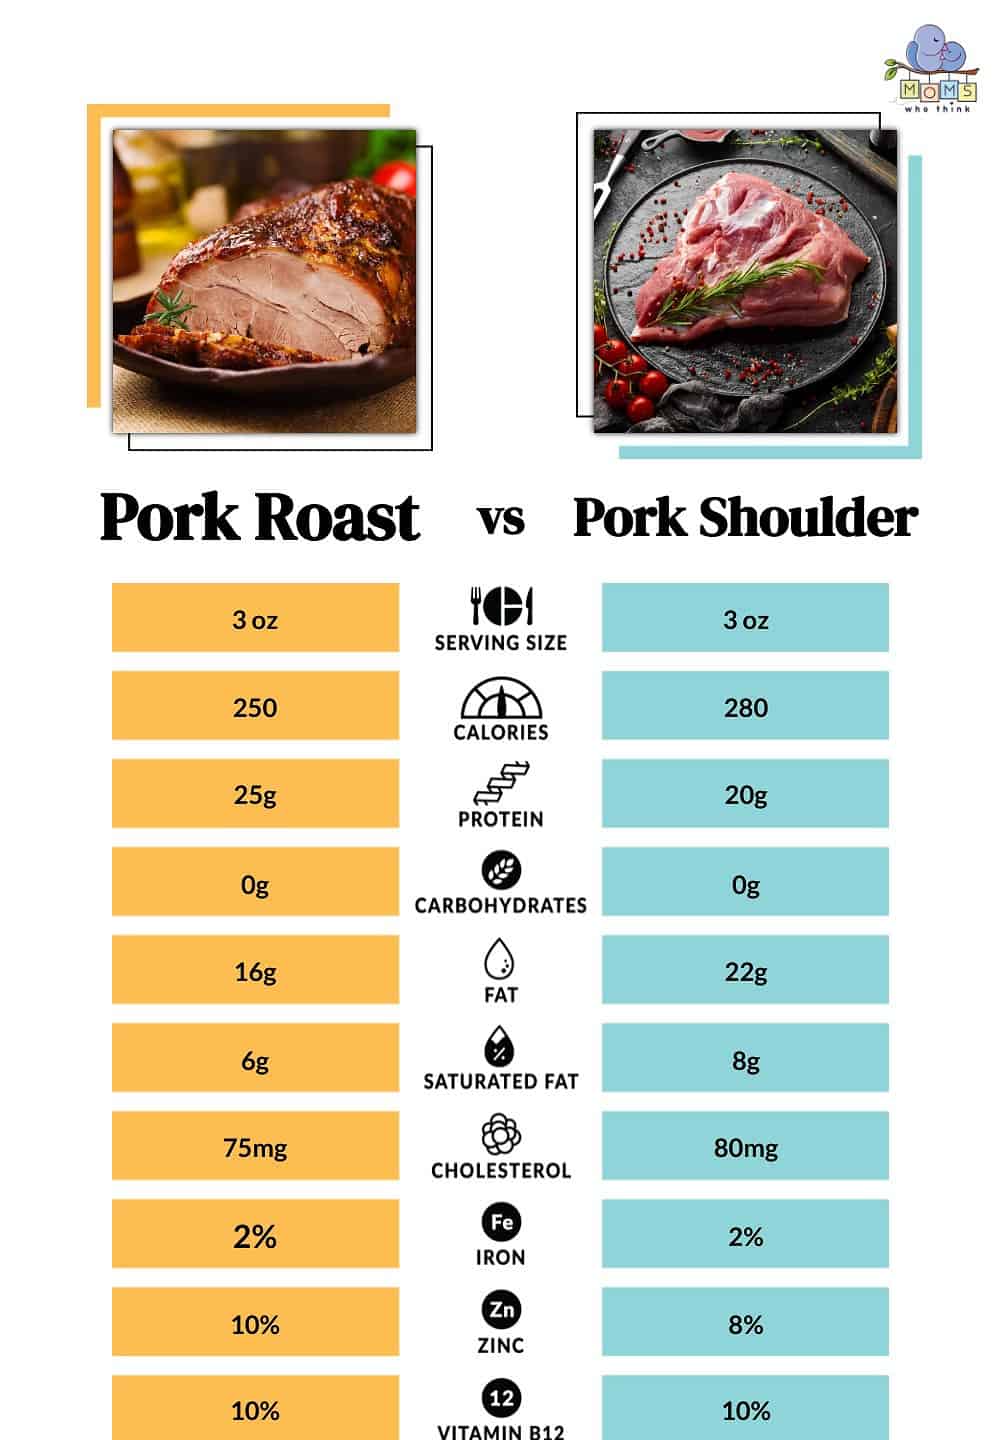 Pork Roast vs Pork Shoulder Nutritional Facts